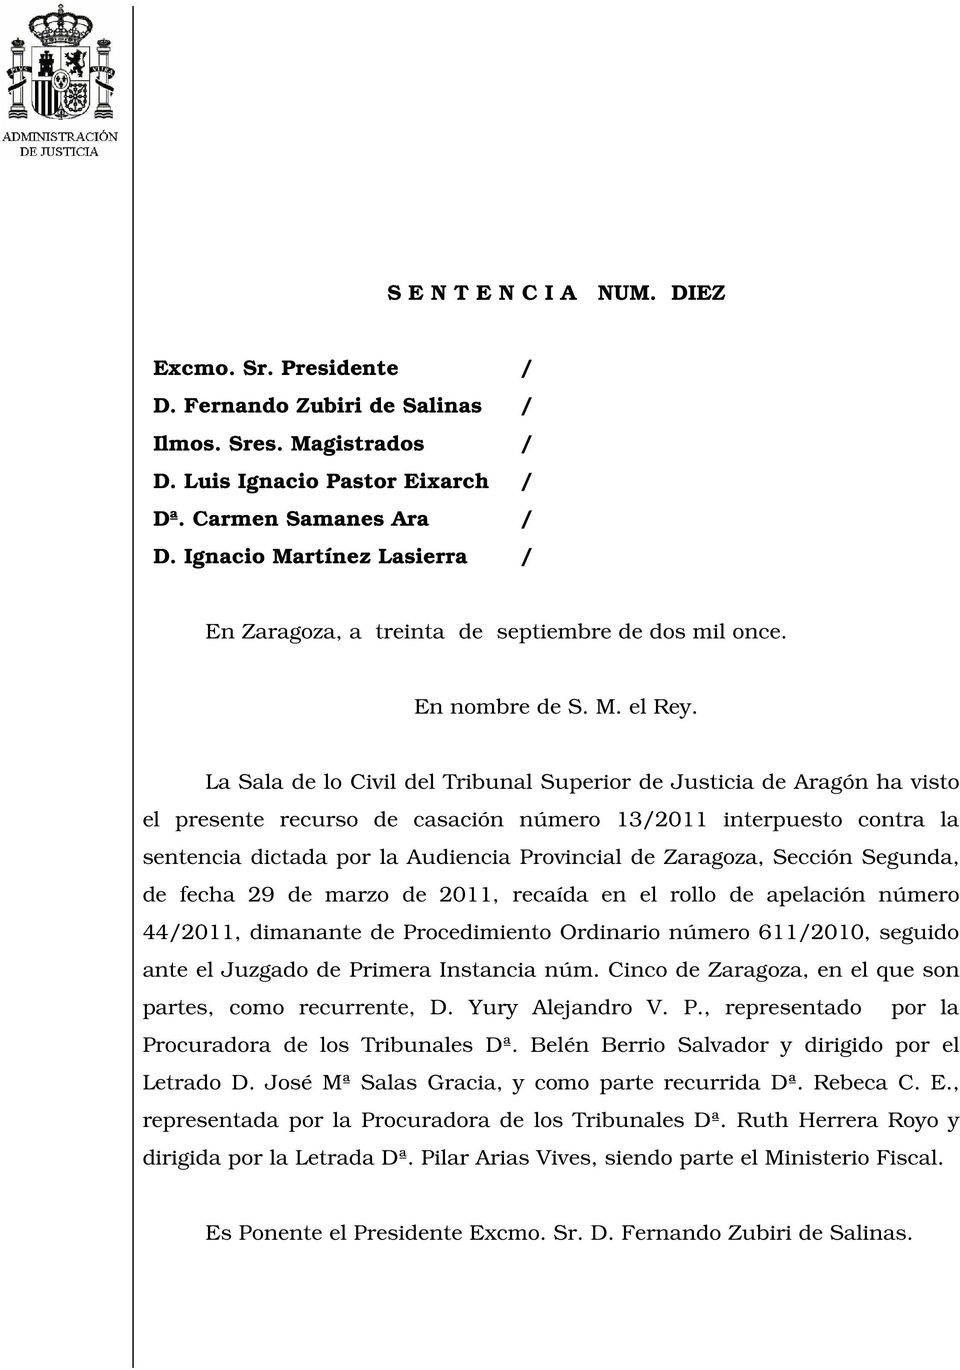 La Sala de lo Civil del Tribunal Superior de Justicia de Aragón ha visto el presente recurso de casación número 13/2011 interpuesto contra la sentencia dictada por la Audiencia Provincial de